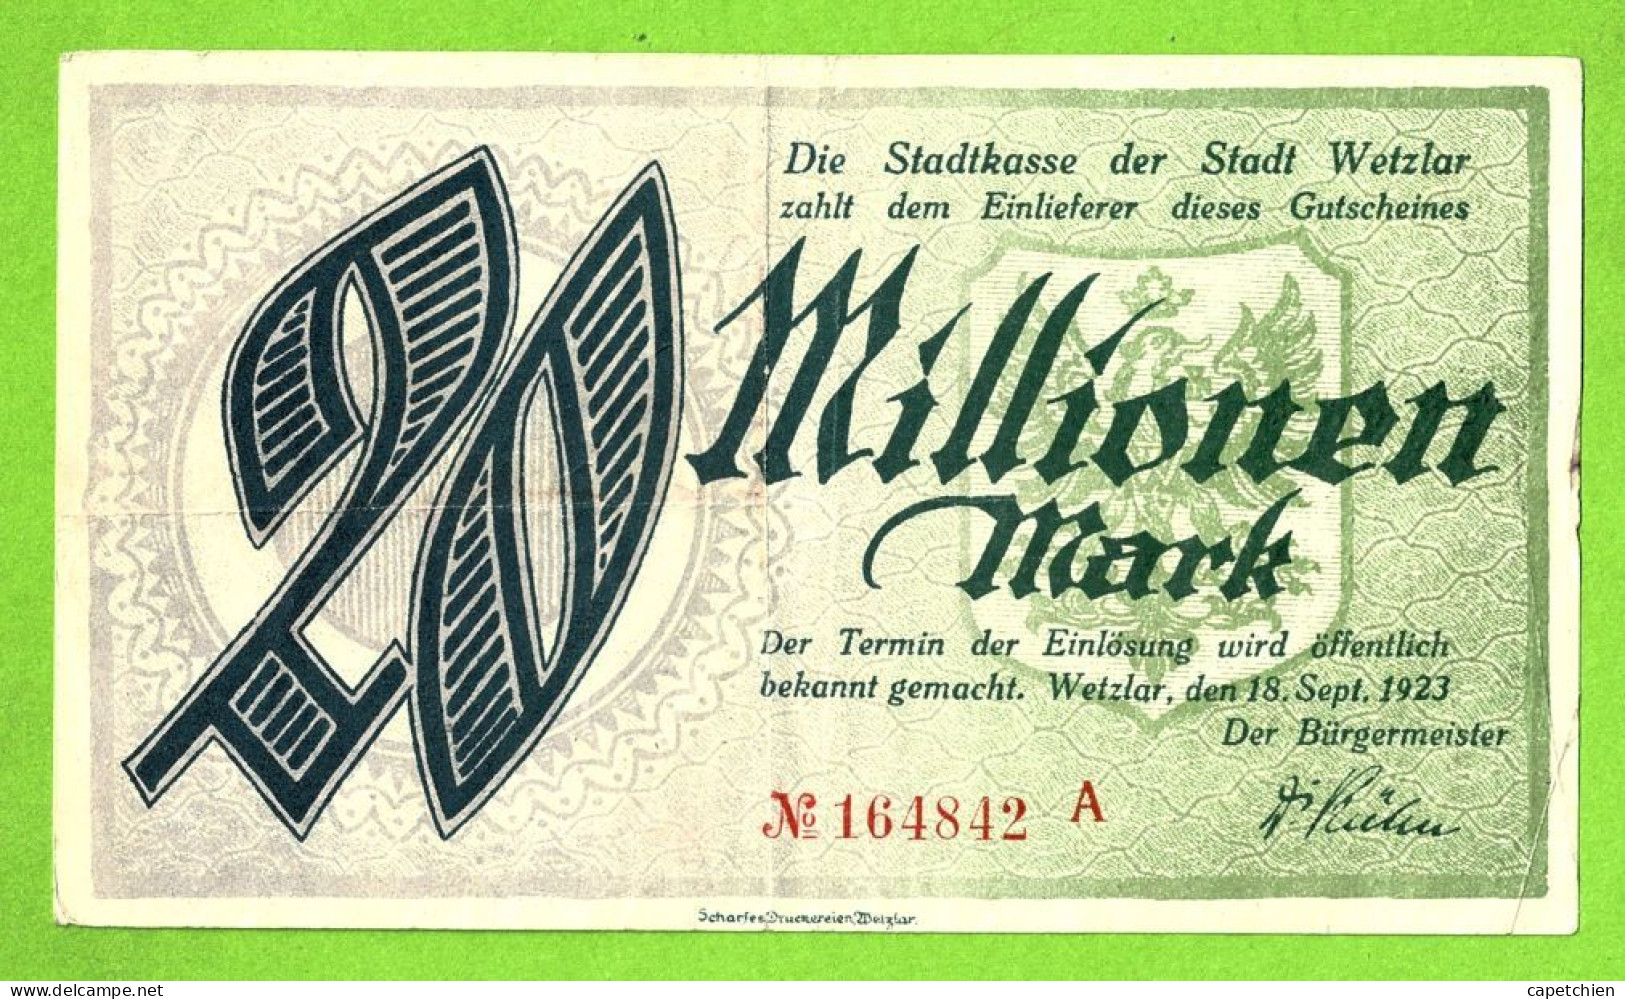 ALLEMAGNE / NOTGELD Der STADT WETZLAR / 20 MILLIONEN  MARK /  N° 164842 A / 18 SEPTEMBRE 1923 - [11] Local Banknote Issues